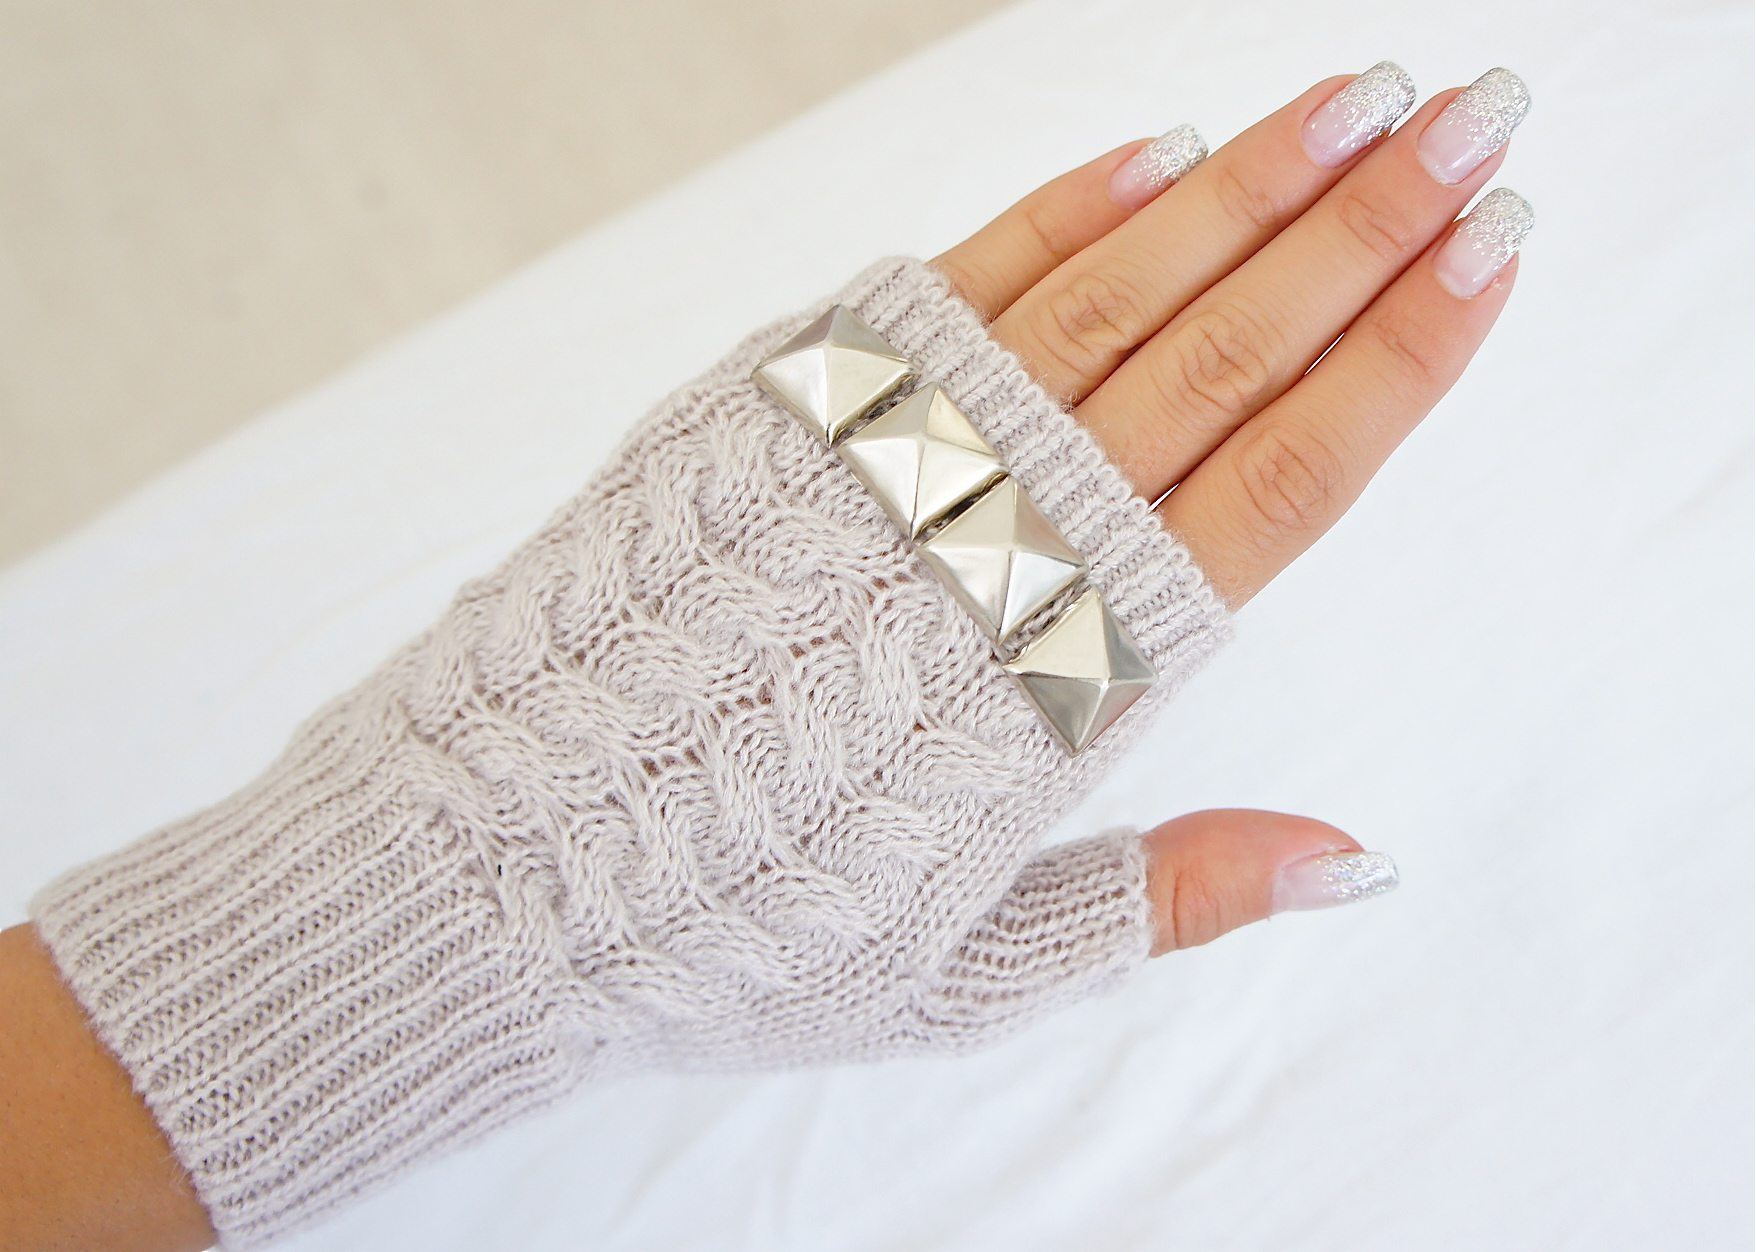 Модные женские перчатки: популярные тренды Осень-Зима 2019